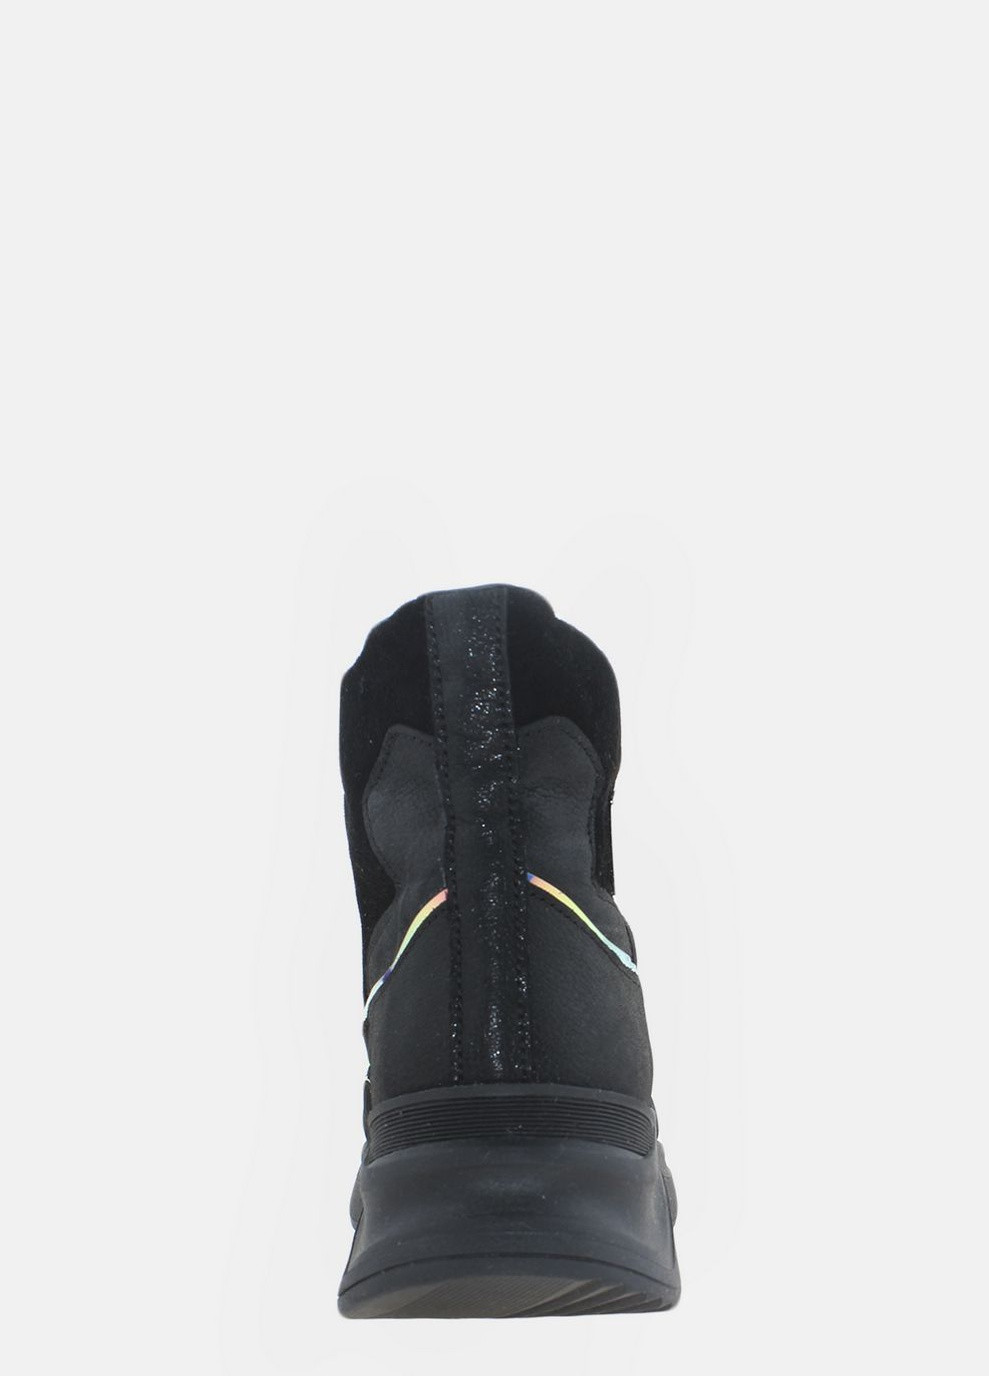 Зимние ботинки rv88556 черный Vitex из натуральной замши